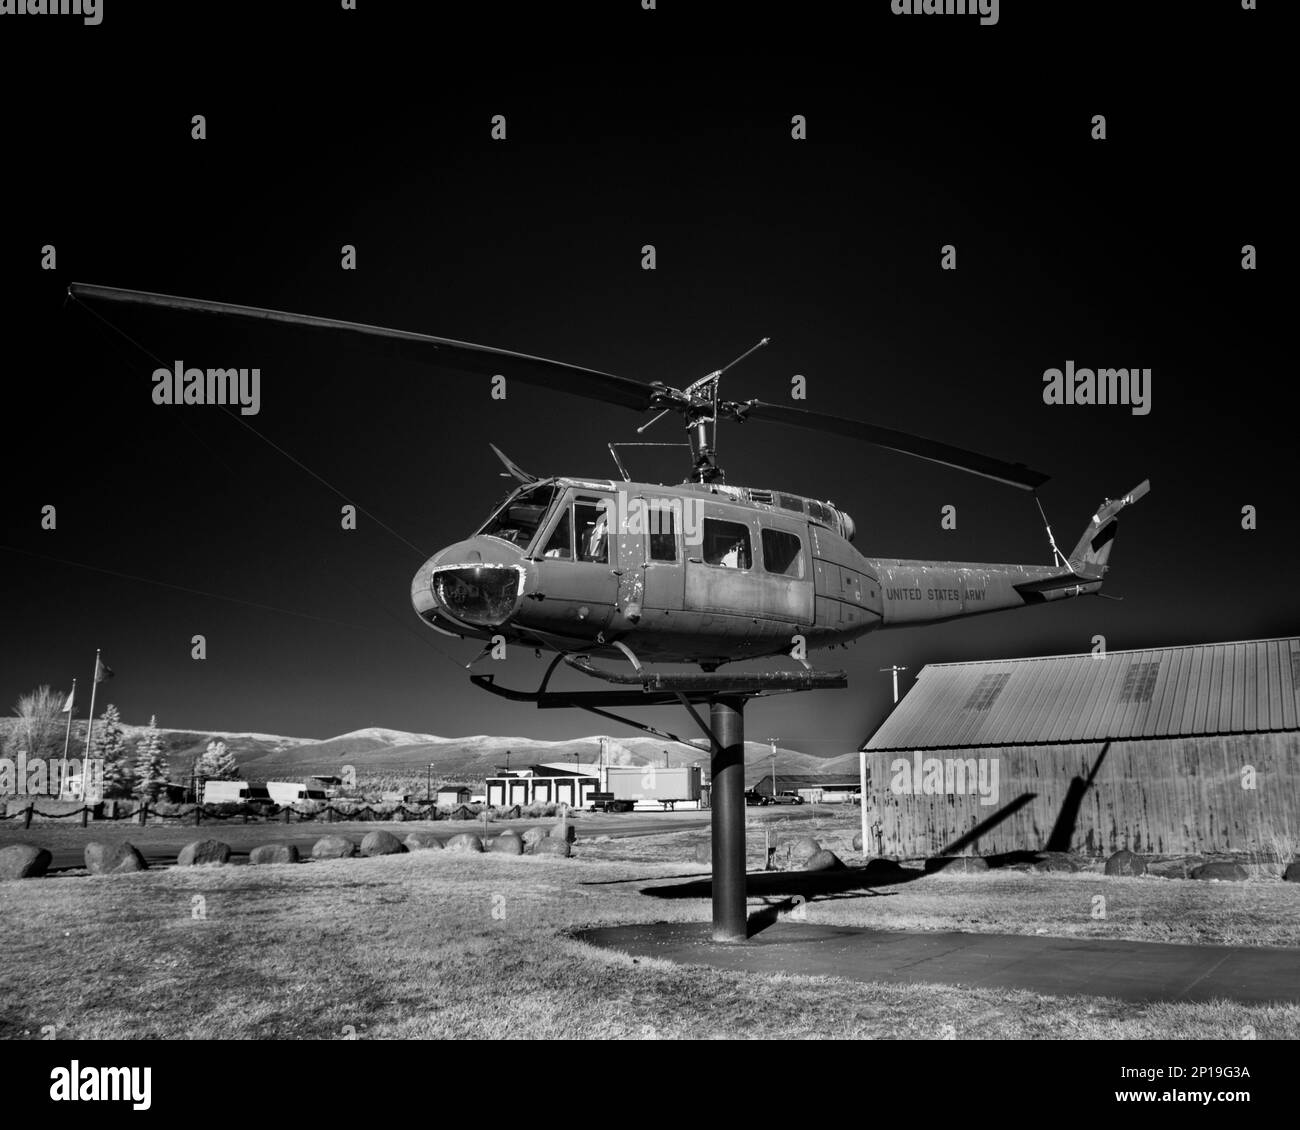 Elicottero Bell Uh-1 Iroquois ('Huey') in pensione in esposizione presso l'aeroporto municipale di Susanville nella contea di Lassen, California, USA. (Immagine a infrarossi) Foto Stock